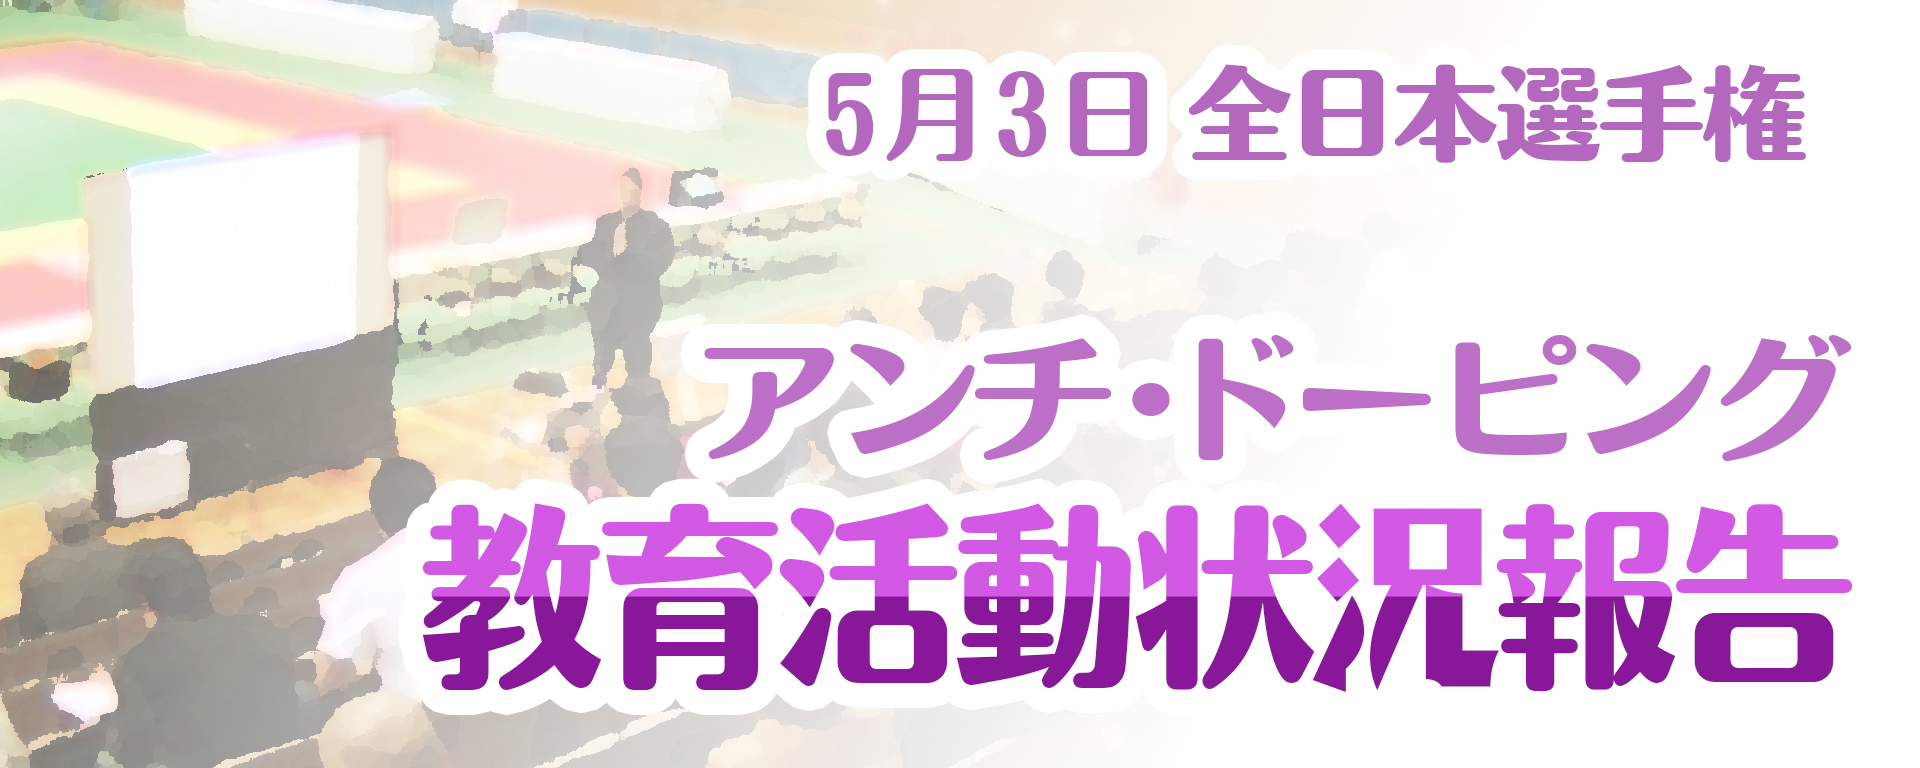 5月の全日本選手権でのアンチ・ドーピング教育活動状況報告タイトル画像